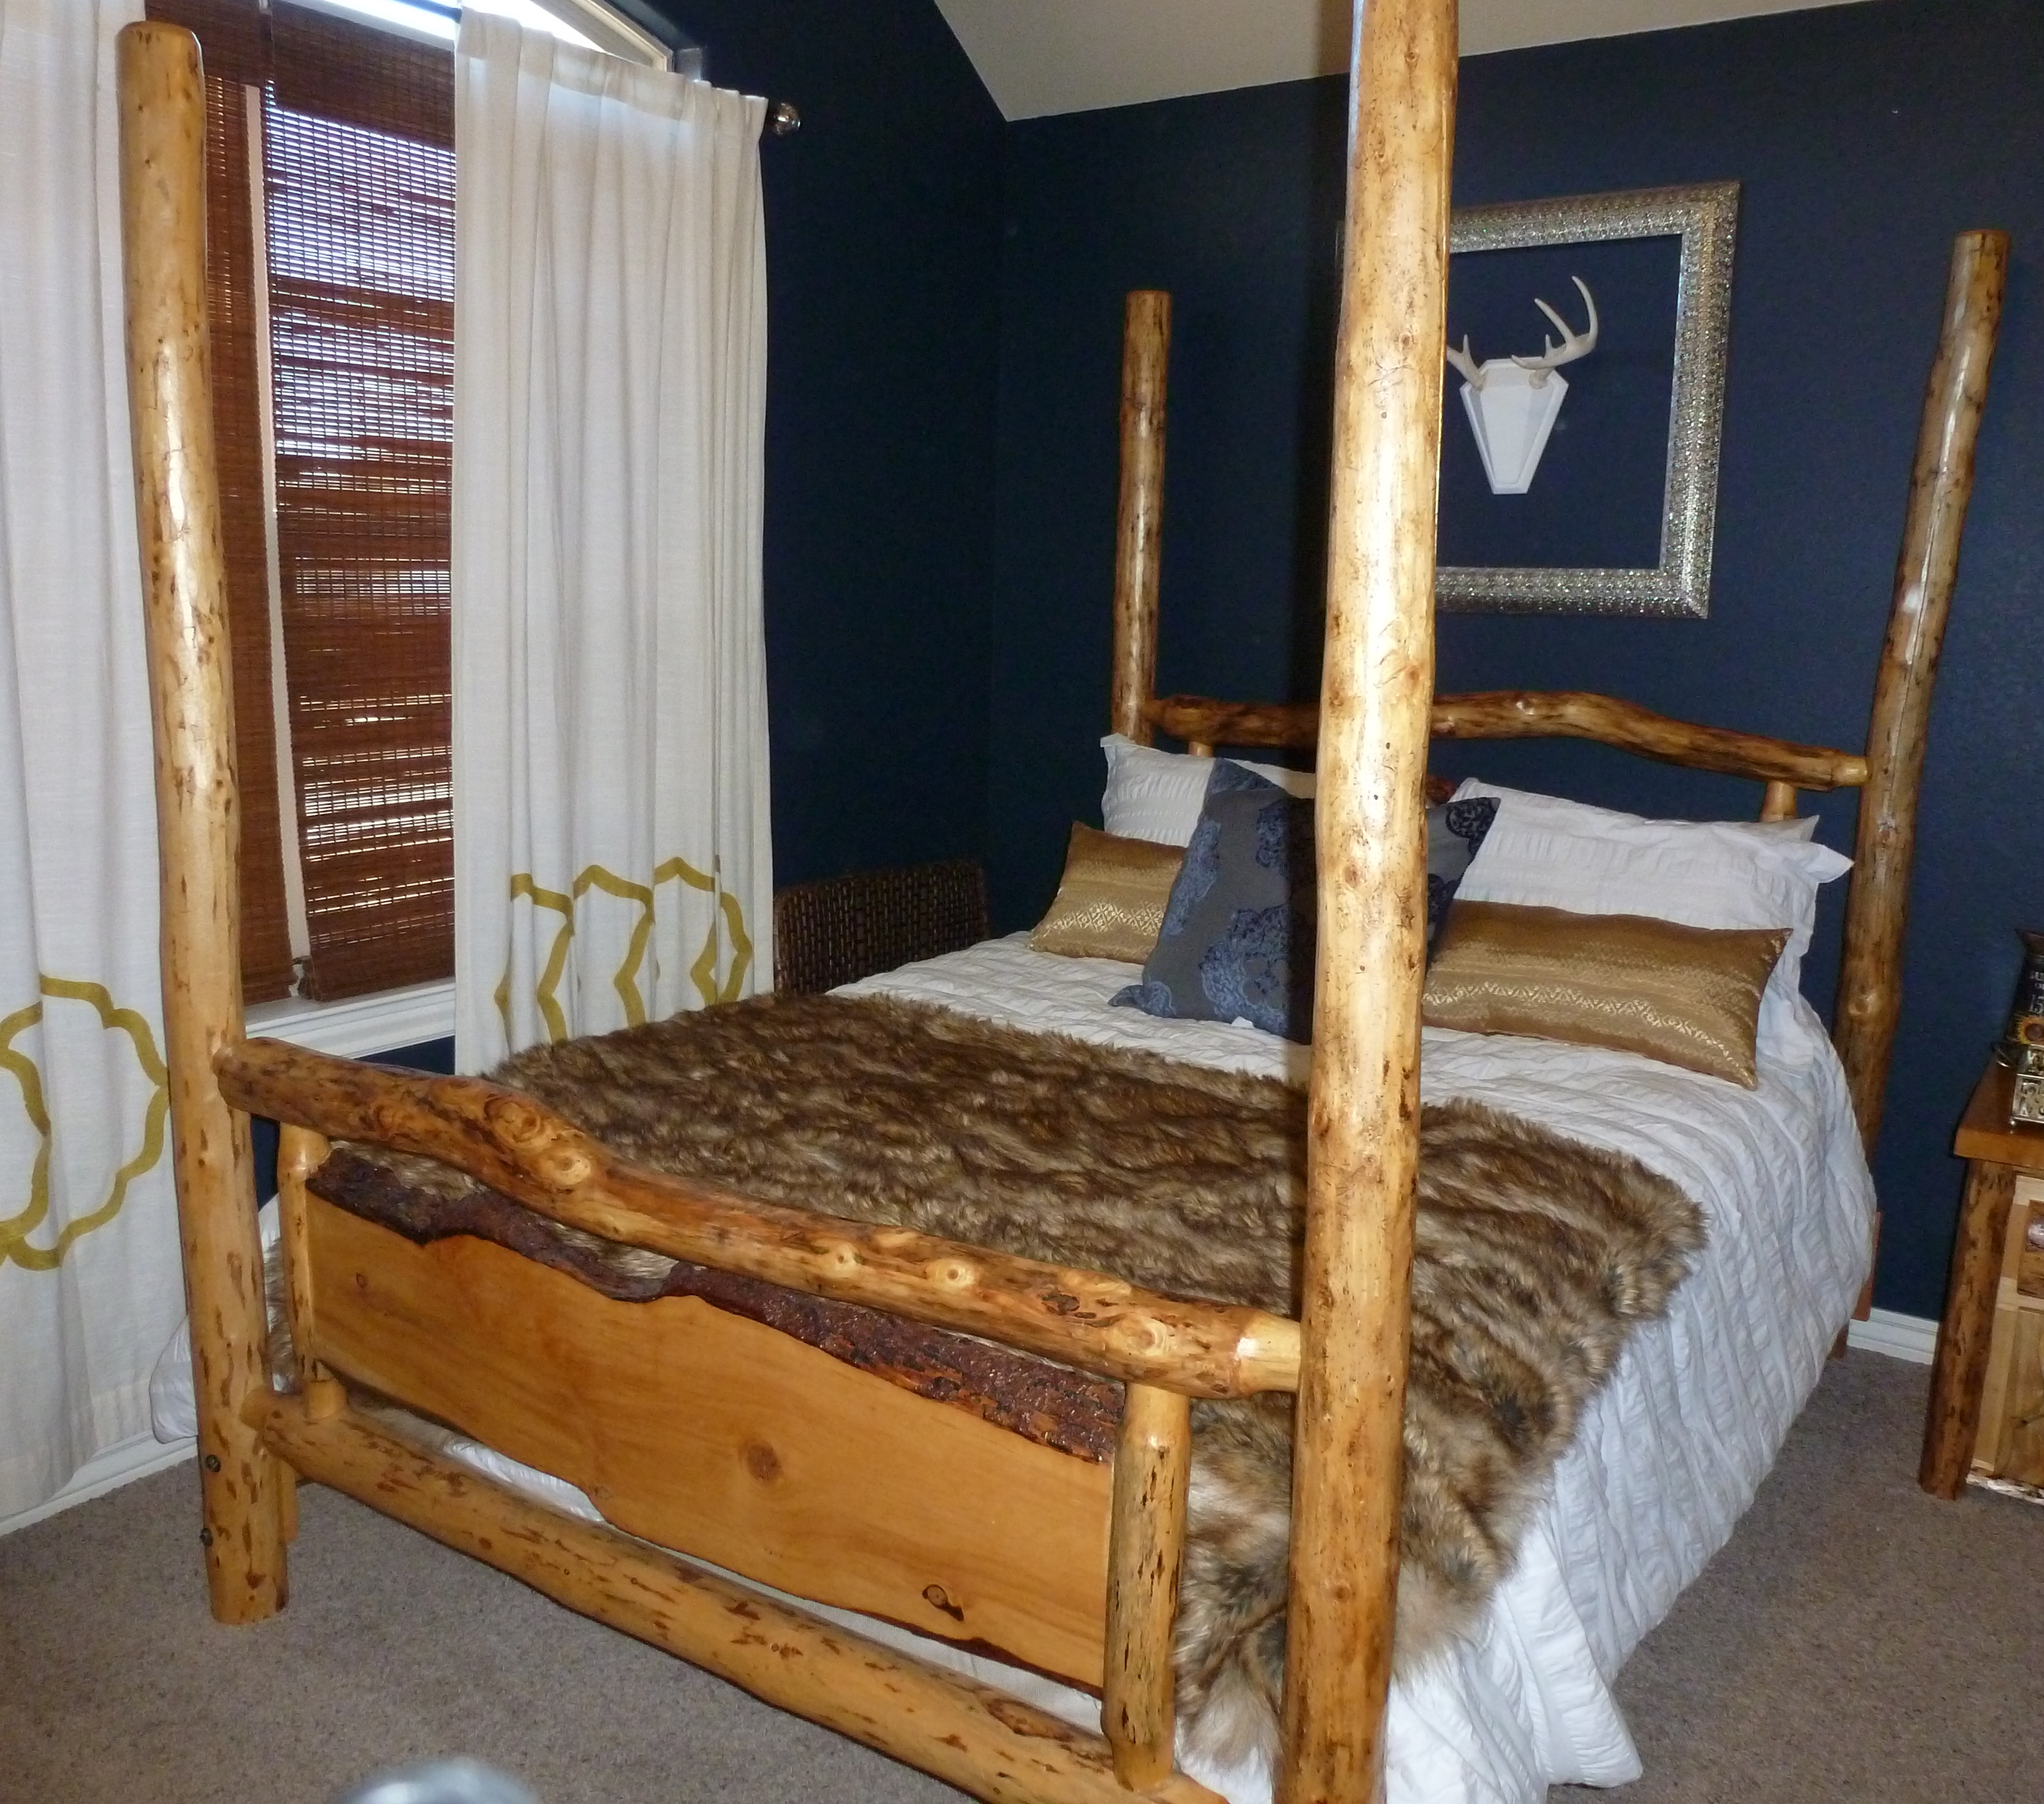 Lodge Pole Pine Bedroom Sets Leland, Lodgepole Pine Bed Frames